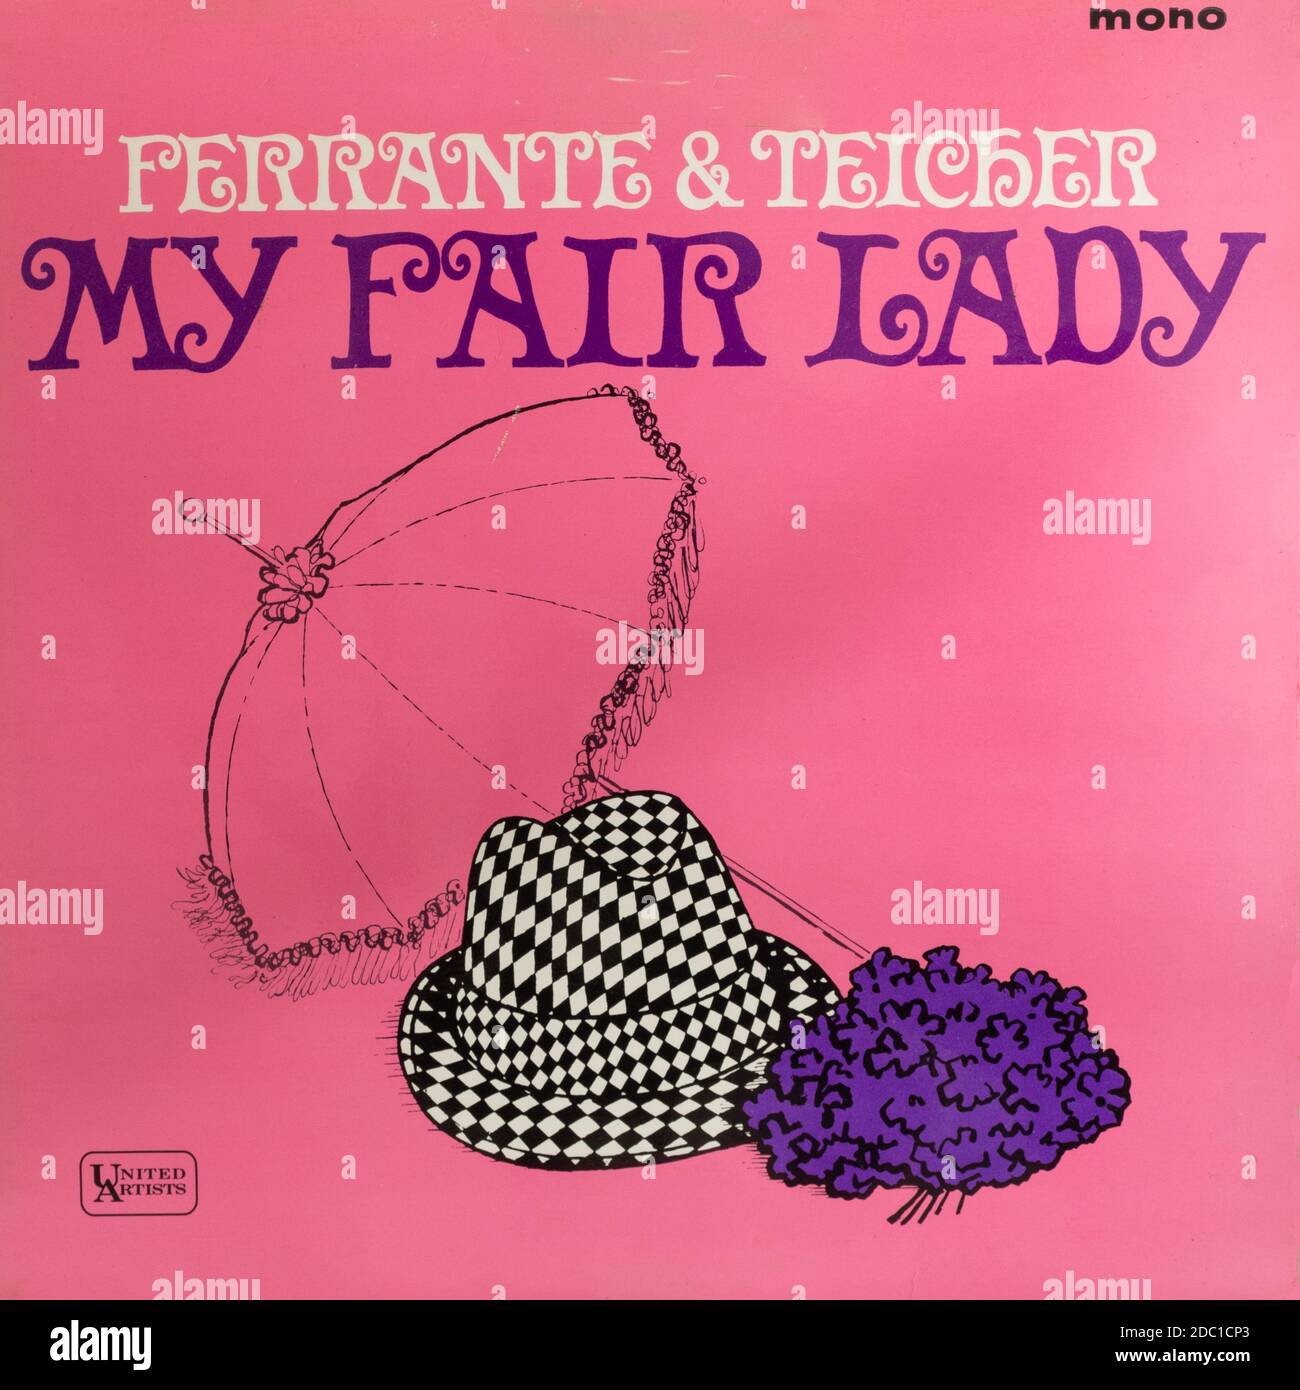 My Fair Lady, Ferrante & Teicher, couverture de l'album vinyle LP, chansons de la comédie musicale, 1964 Banque D'Images